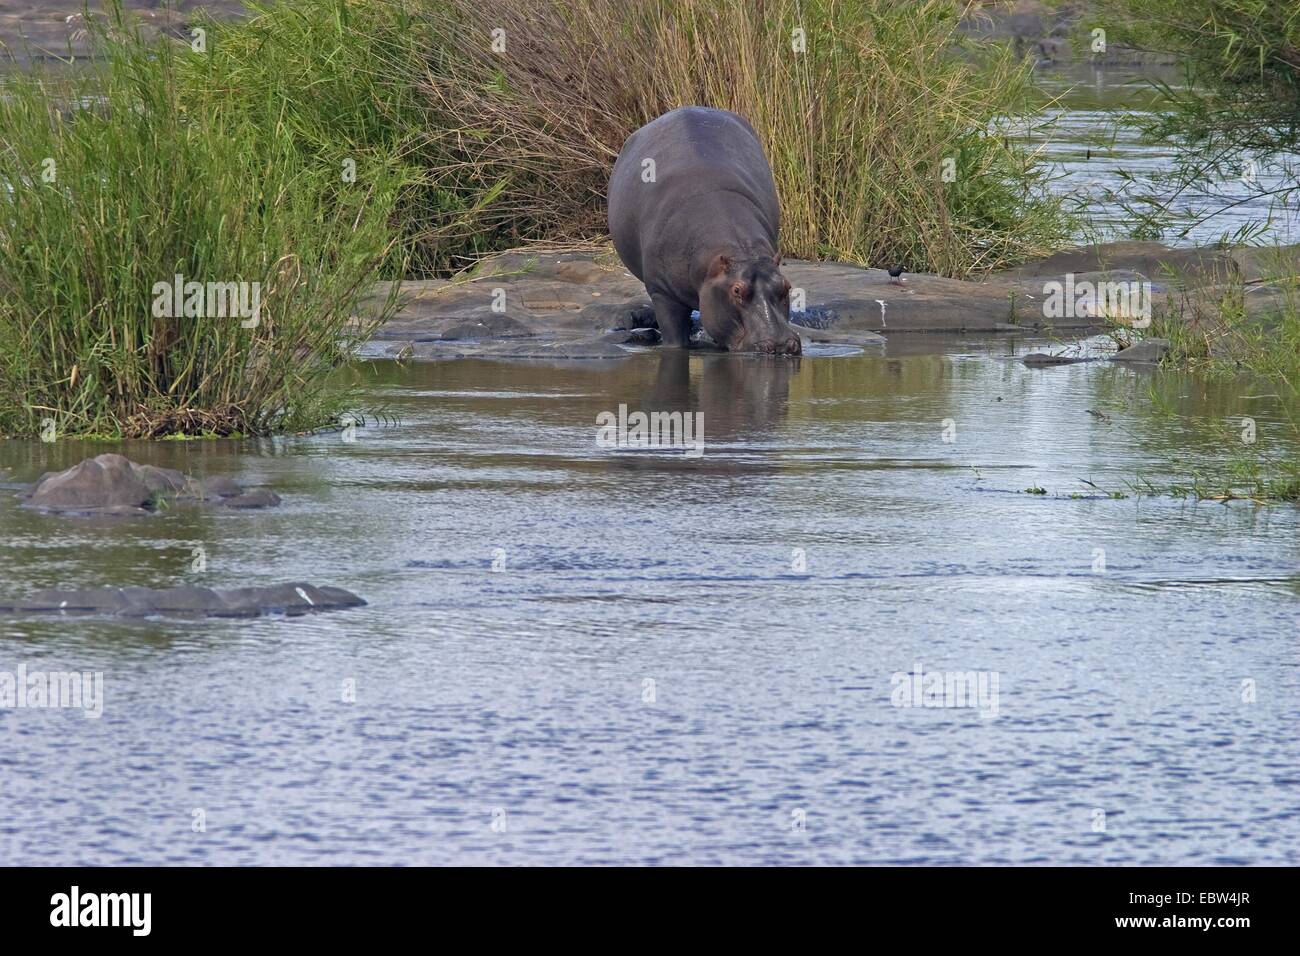 Hippopotame, hippopotame, hippopotame commun (Hippopotamus amphibius), au fleuve, Afrique du Sud, du Limpopo, Krueger National Park Banque D'Images